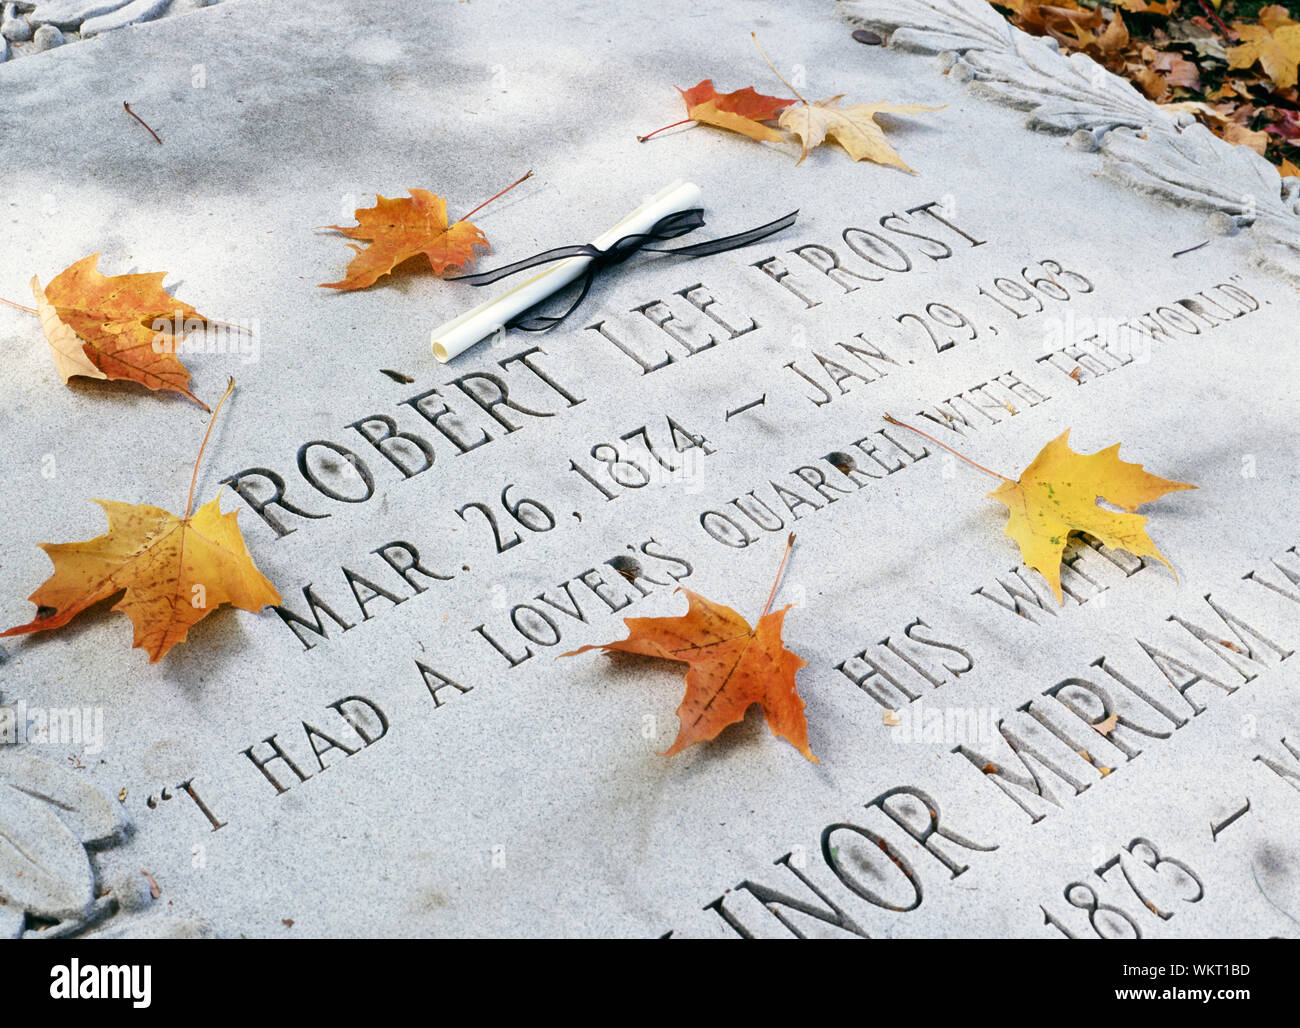 Robert Frost gravesite in autumn Stock Photo